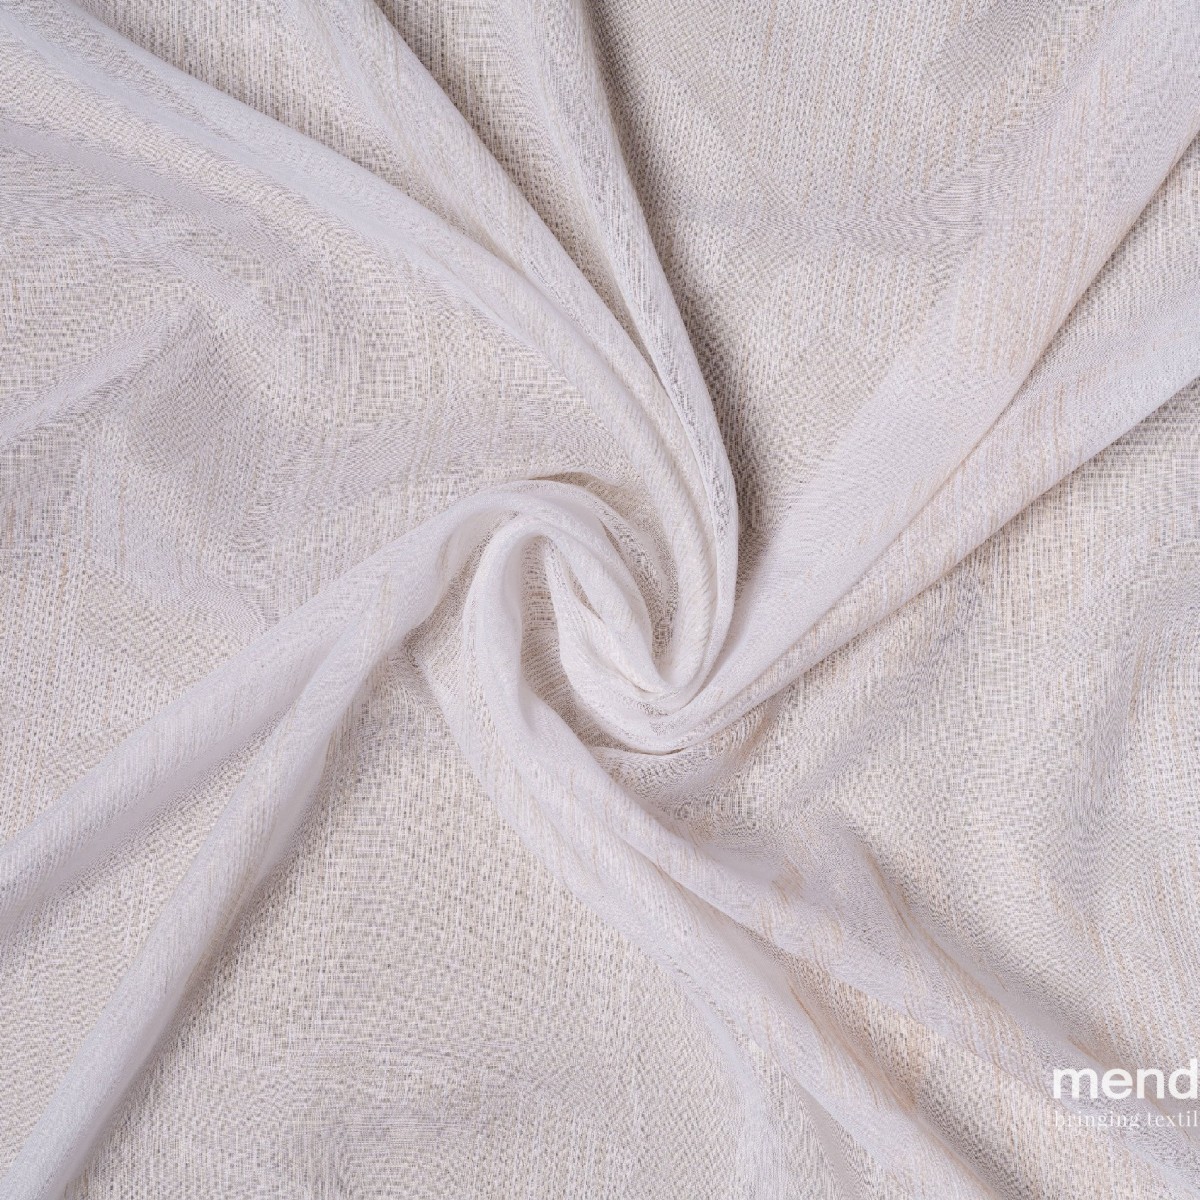 Perdele Mendola fabrics MDF-14-TROPEA. Conține culorile: Galben, Galben Pastel, Gri, Telegri 4, Violet, Violet Pastel, Roșu, Roșu-Violet, Maro, Maro-Negru